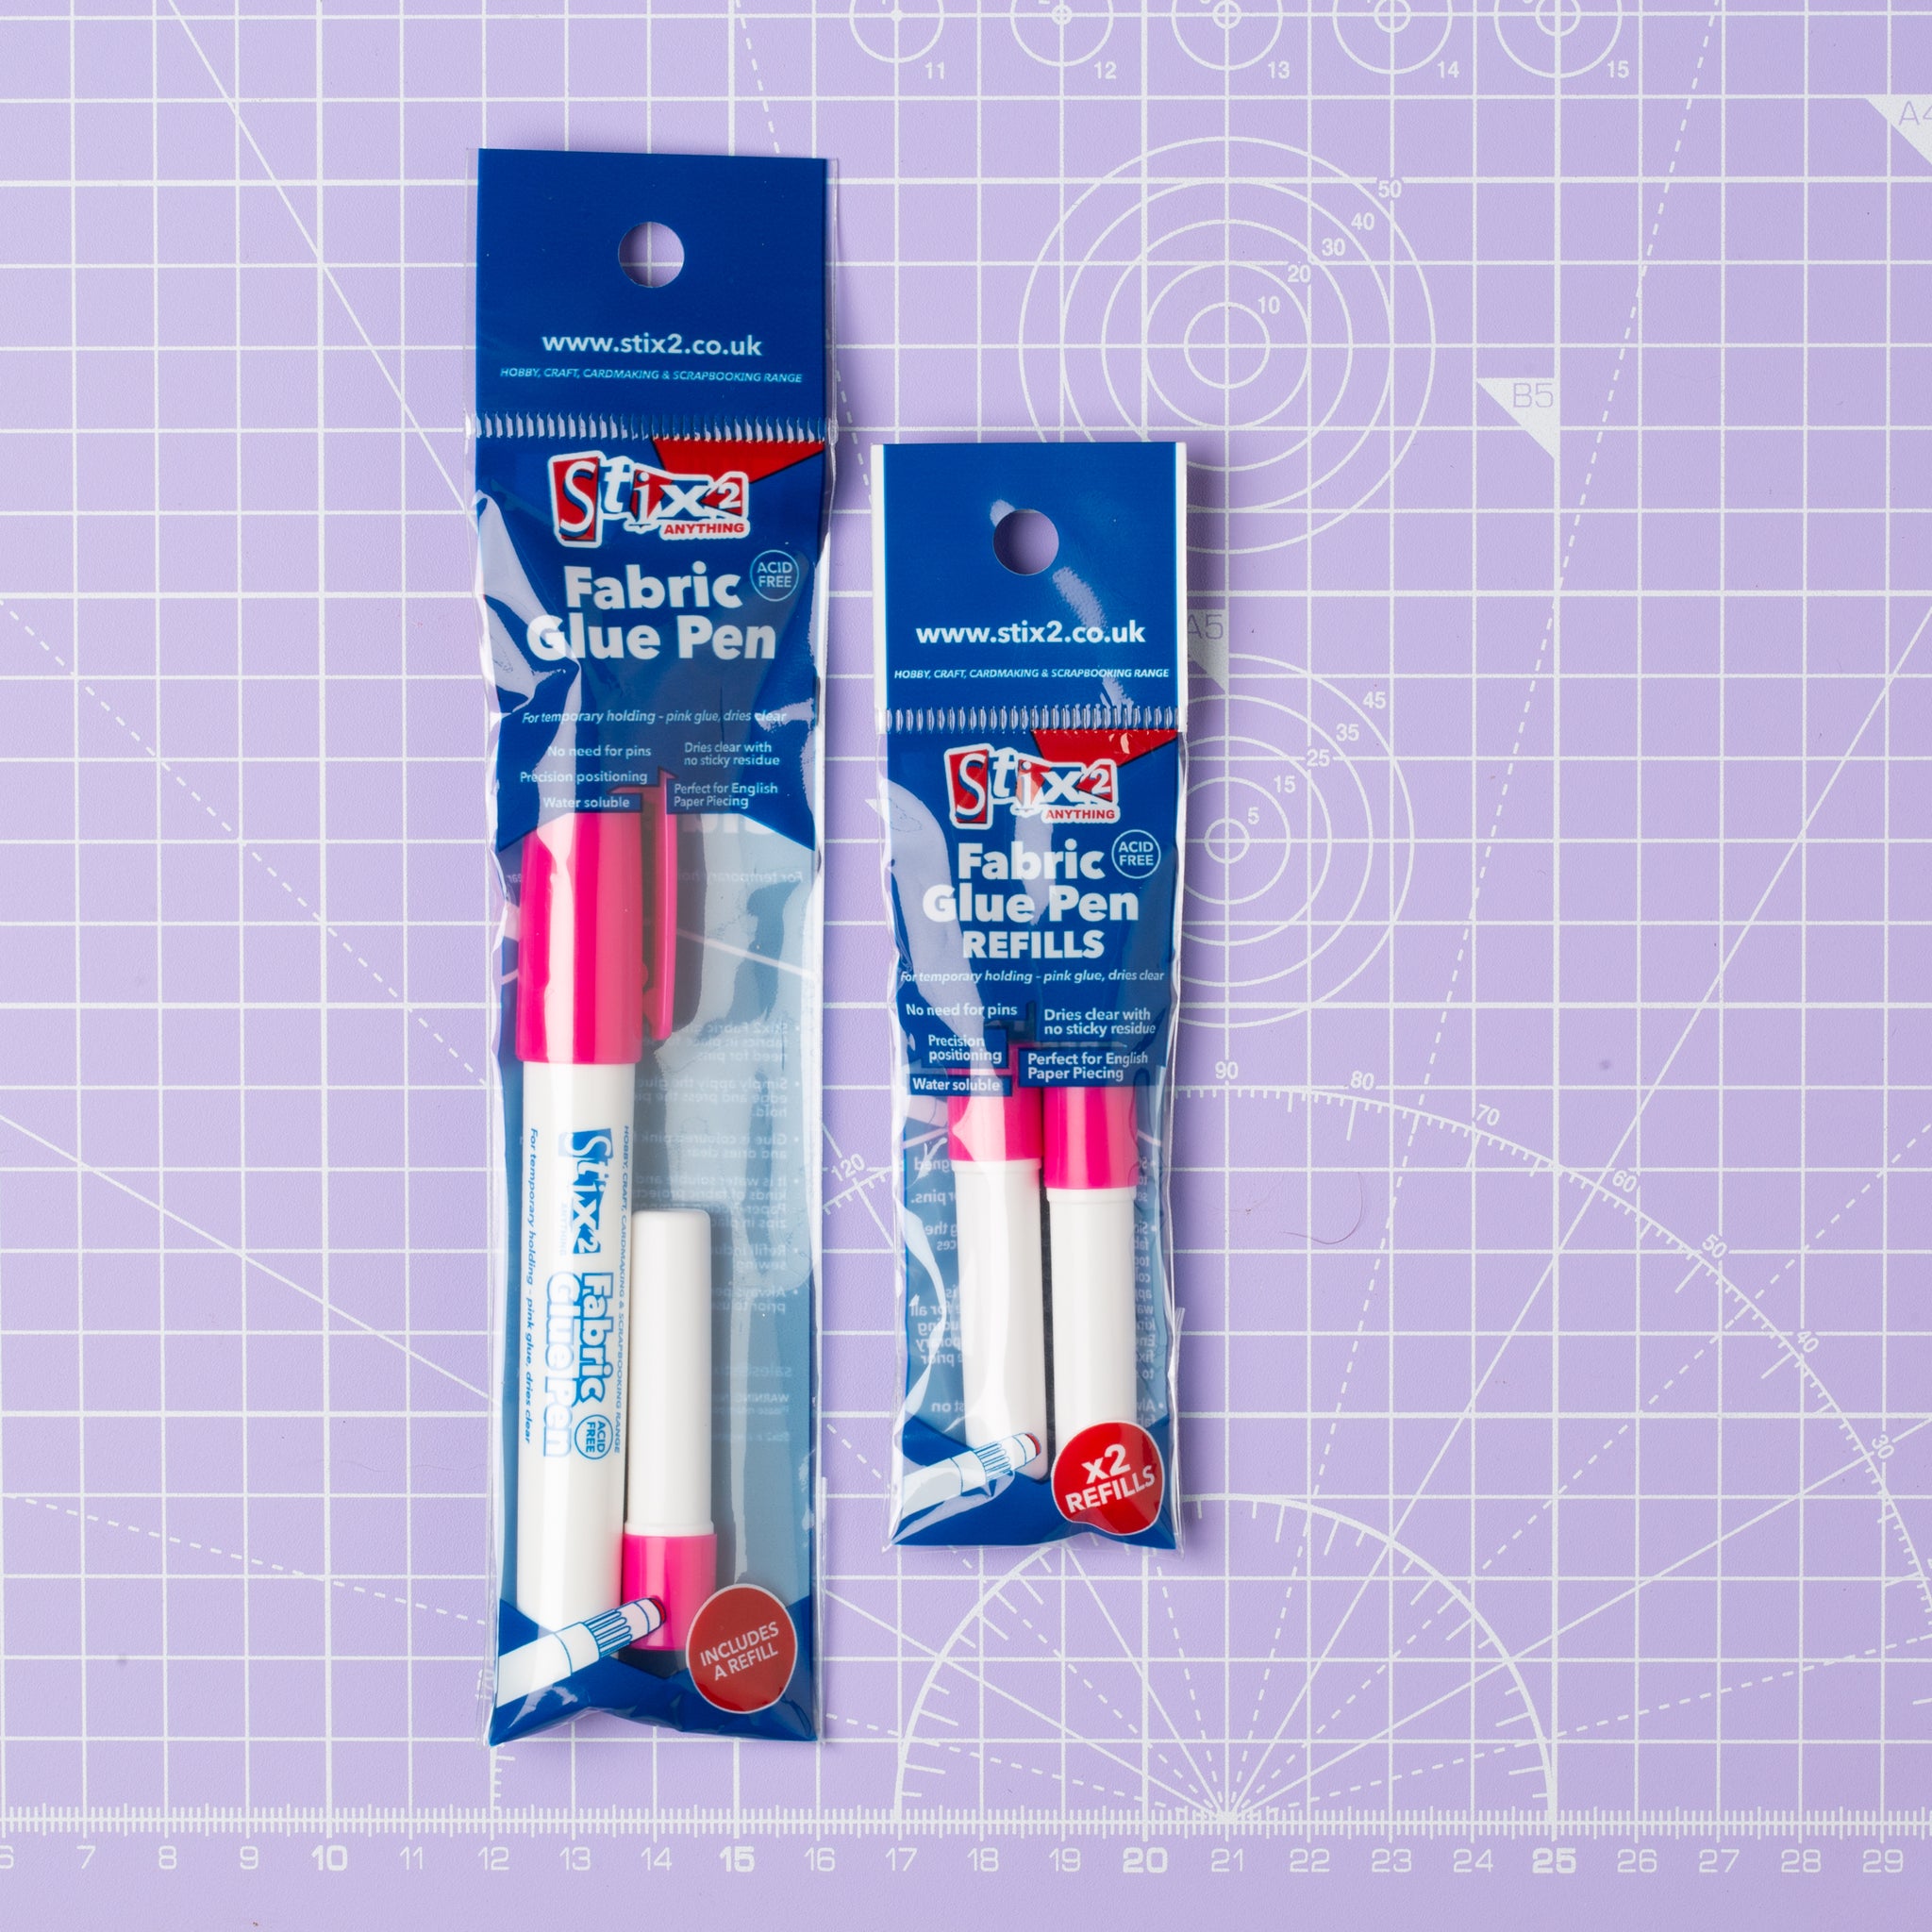 Stix2 Fabric Glue Pen REFILLS ONLY